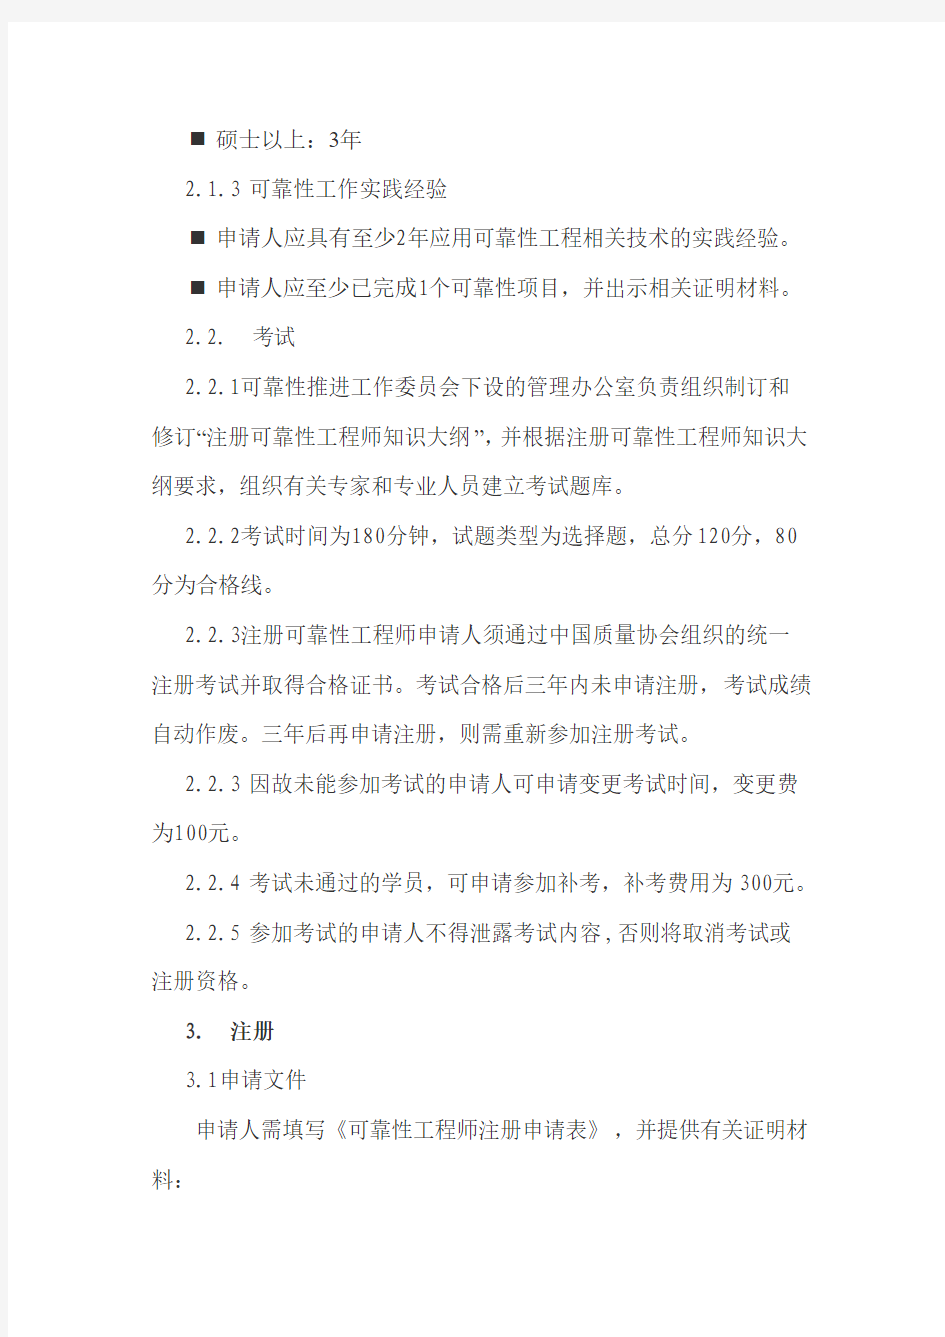 中国质量协会可靠性工程师注册管理办法(试行)